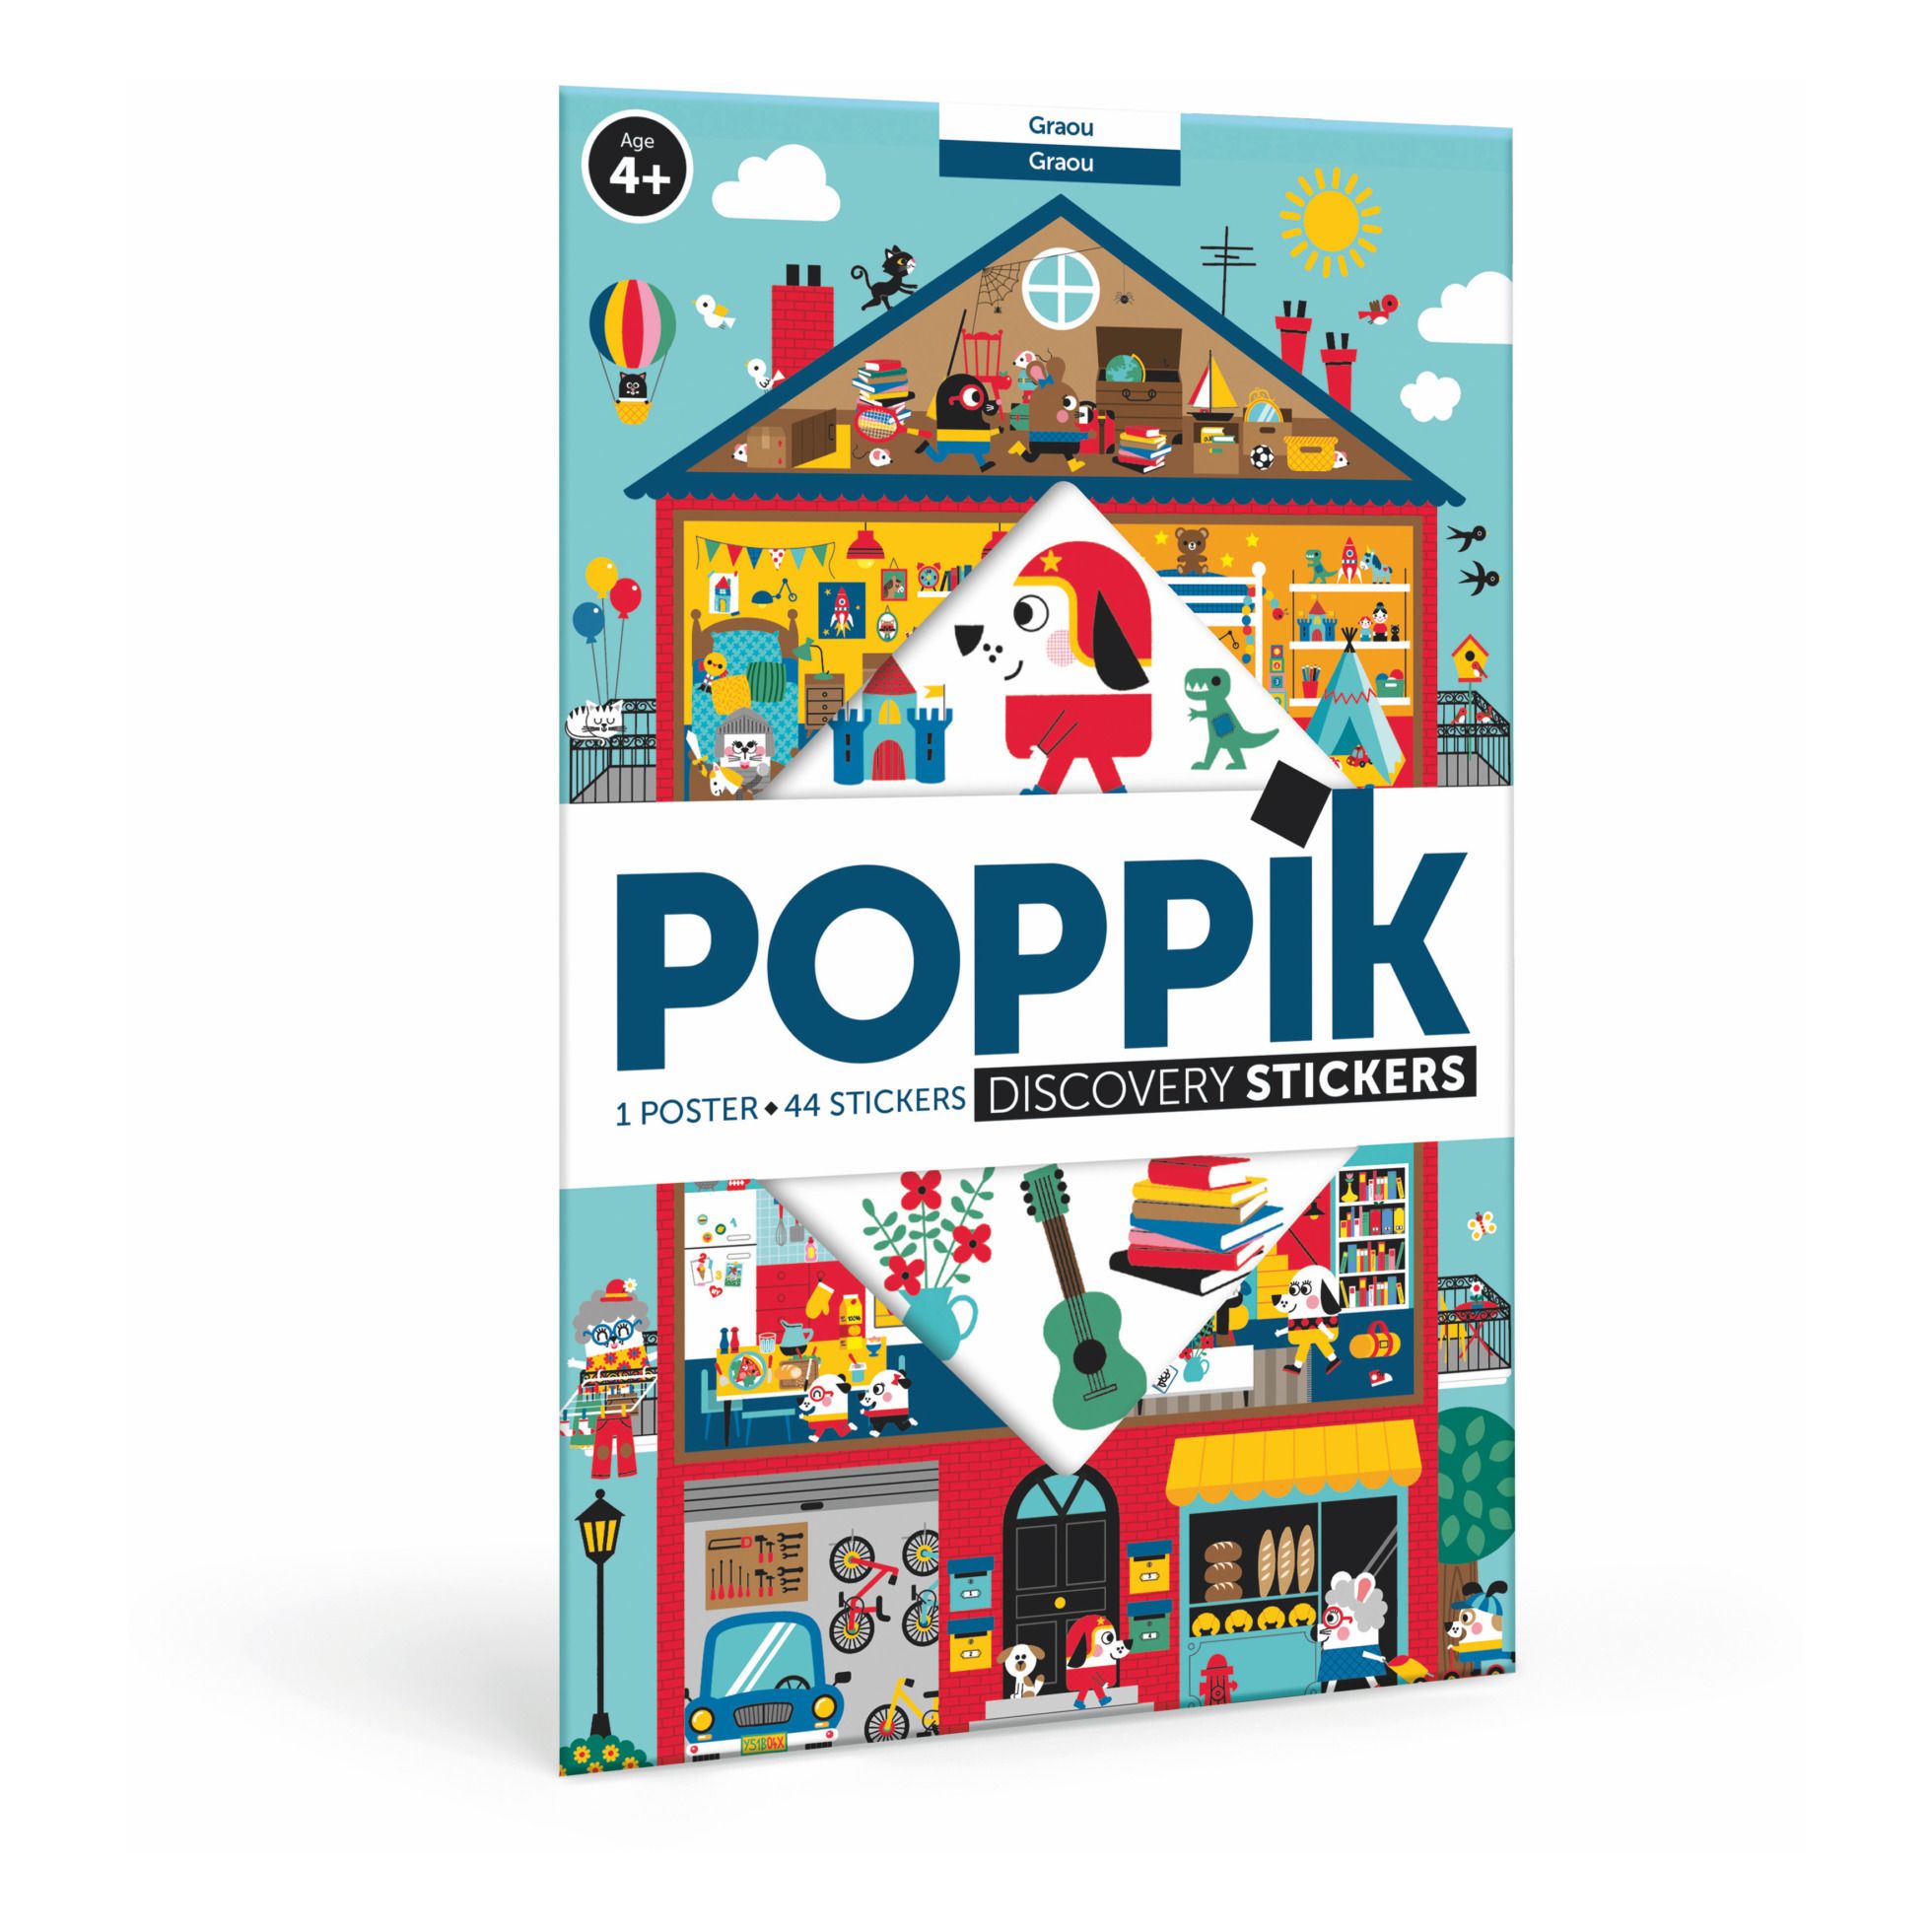 Poppik - Poster stickers Graou - Multicolore